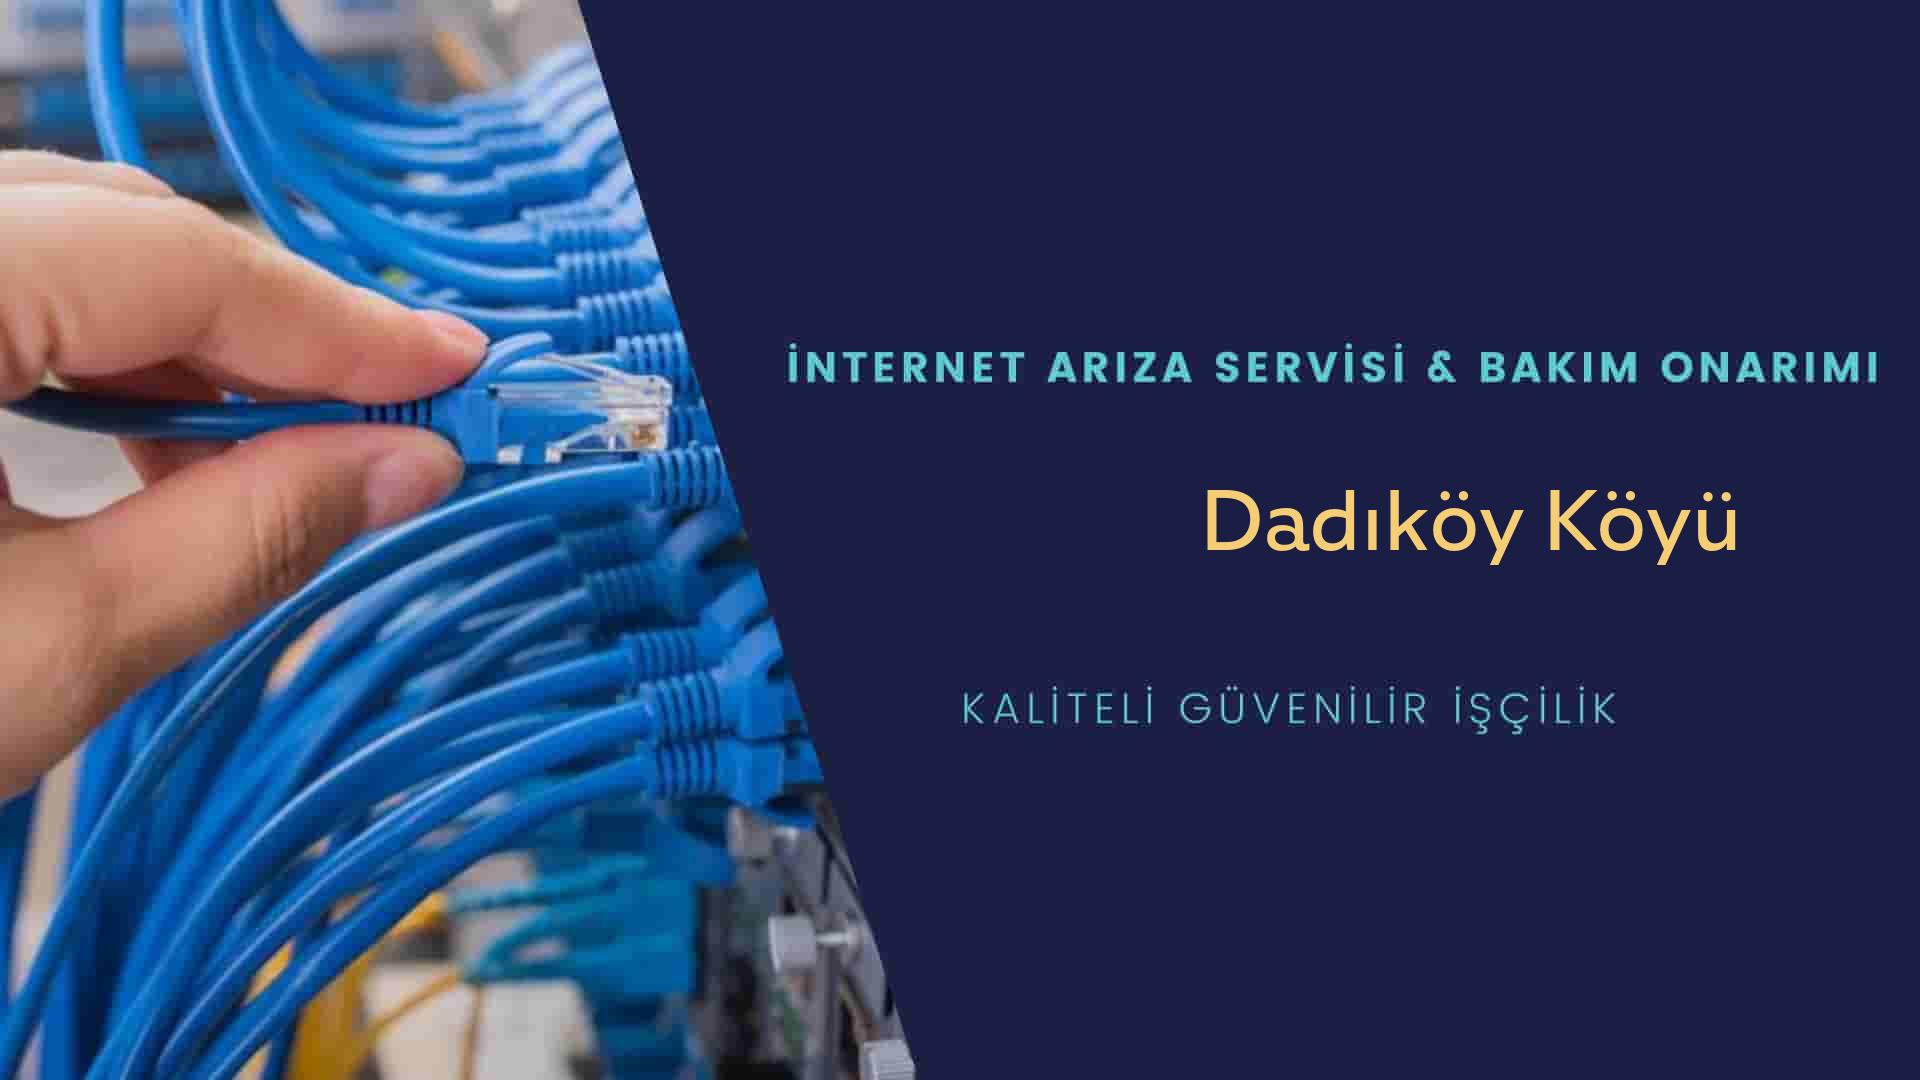 Dadıköy Köyü internet kablosu çekimi yapan yerler veya elektrikçiler mi? arıyorsunuz doğru yerdesiniz o zaman sizlere 7/24 yardımcı olacak profesyonel ustalarımız bir telefon kadar yakındır size.